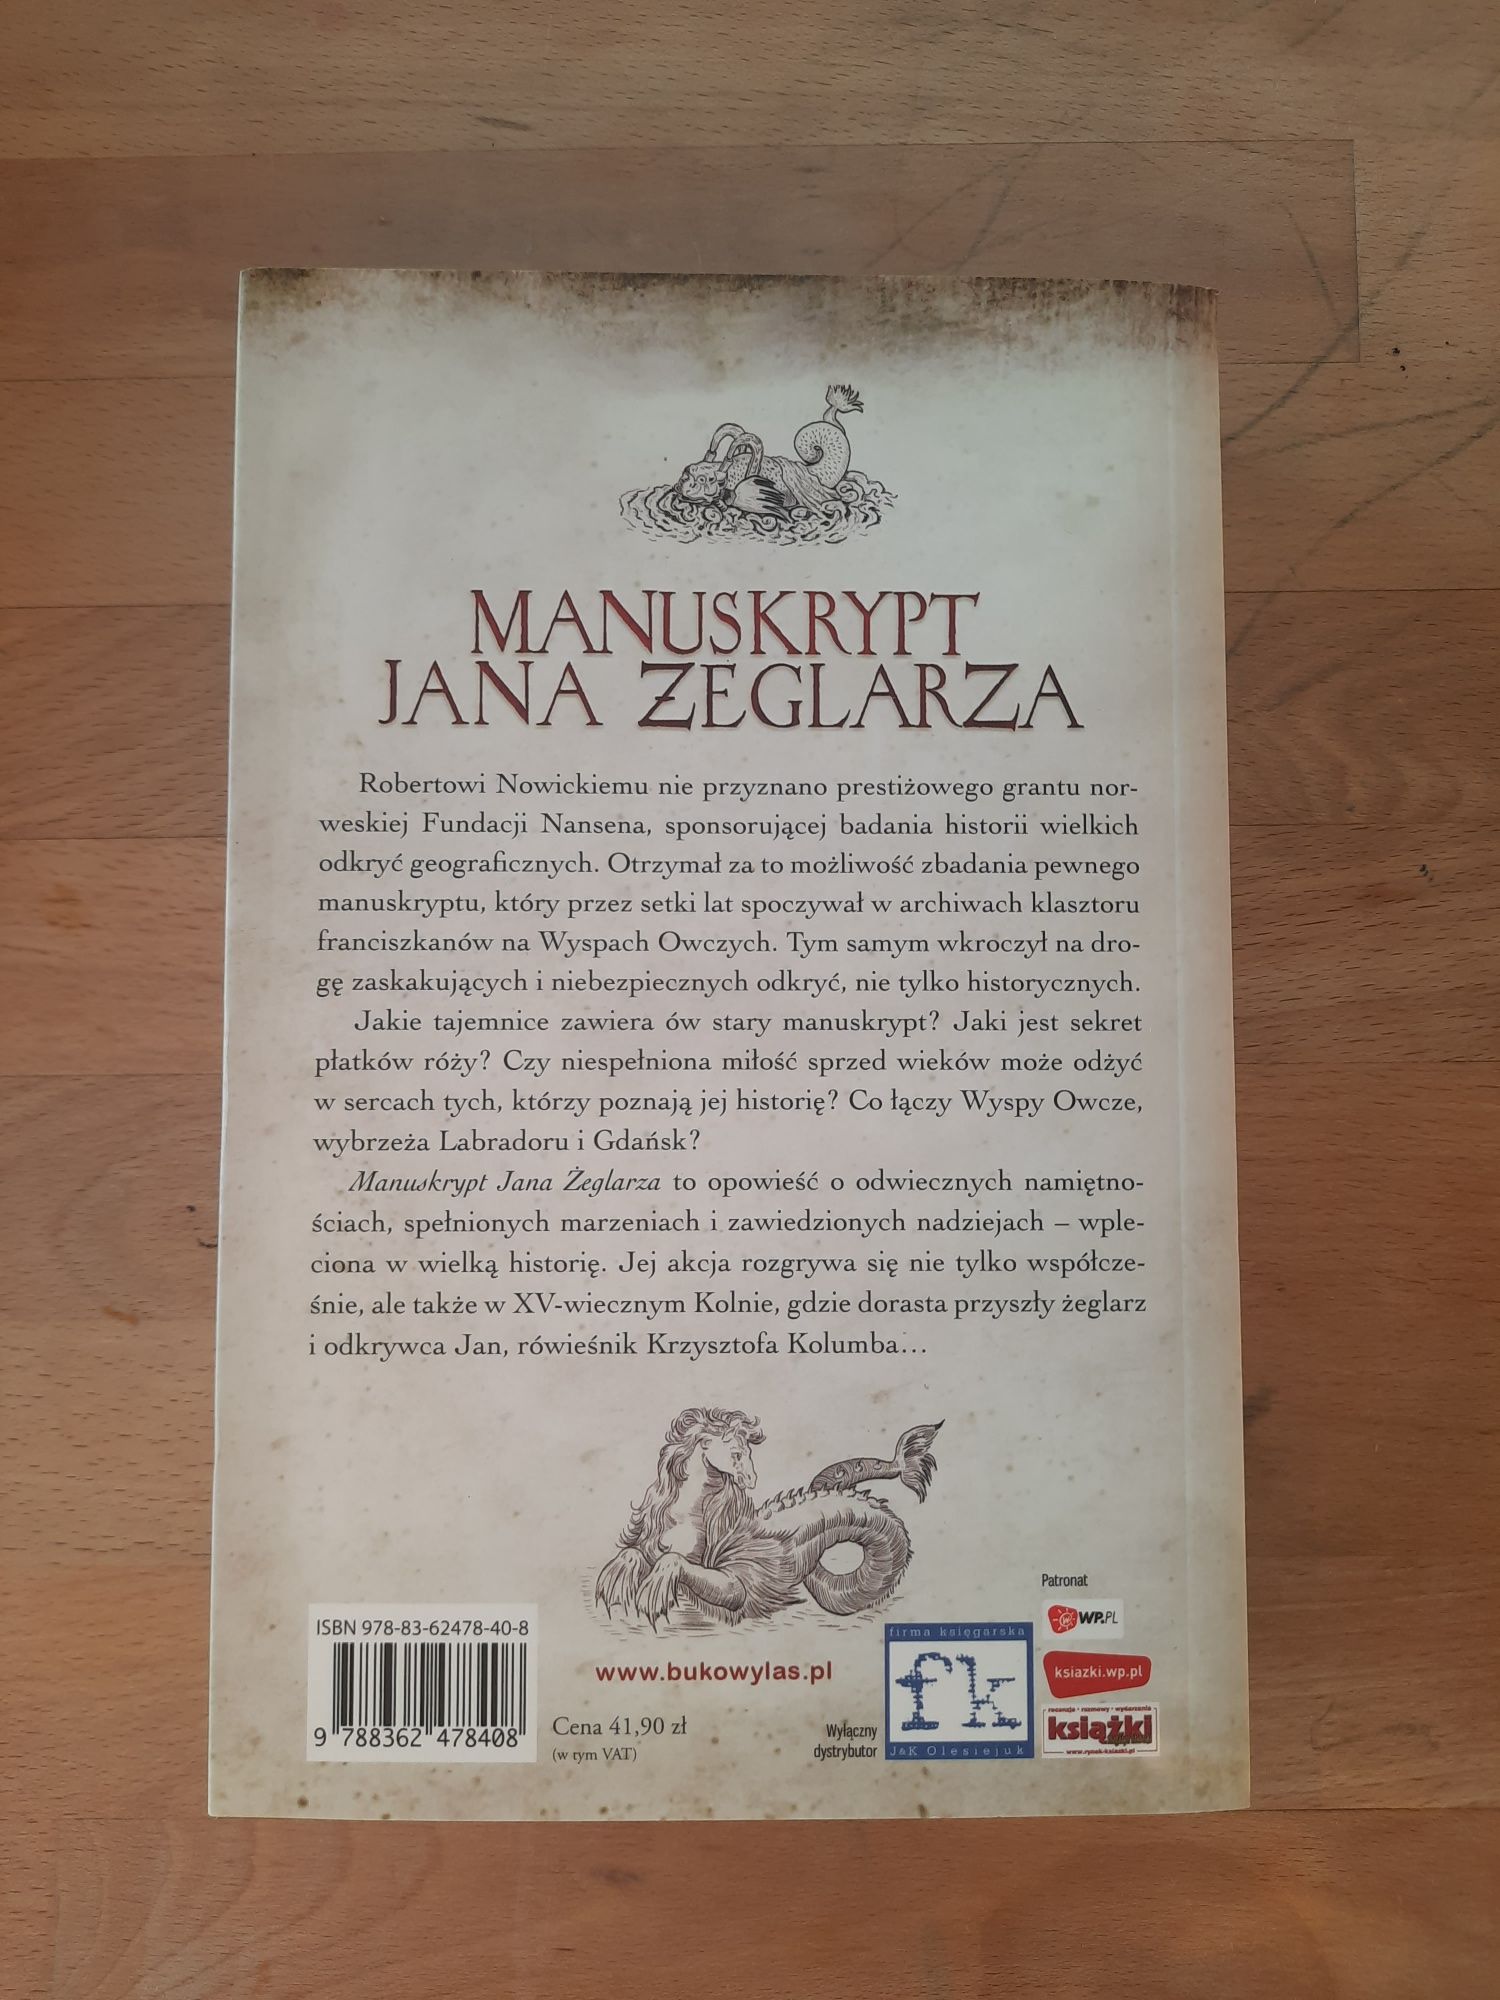 "Manuskrypt Jana żeglarza" A.Dudziński